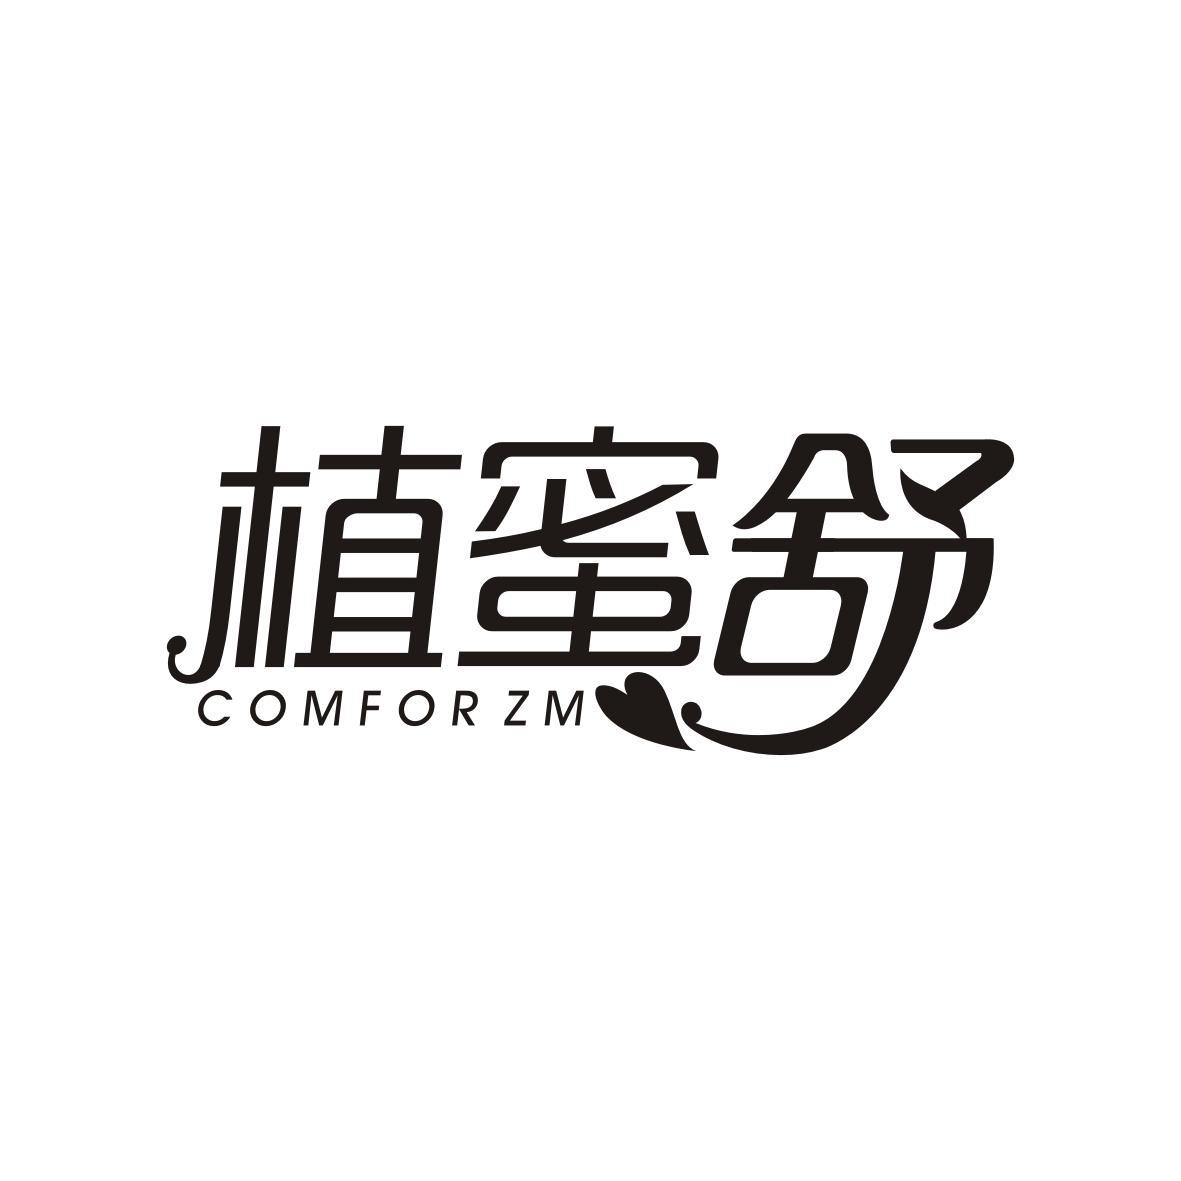 植蜜舒 COMFOR ZM